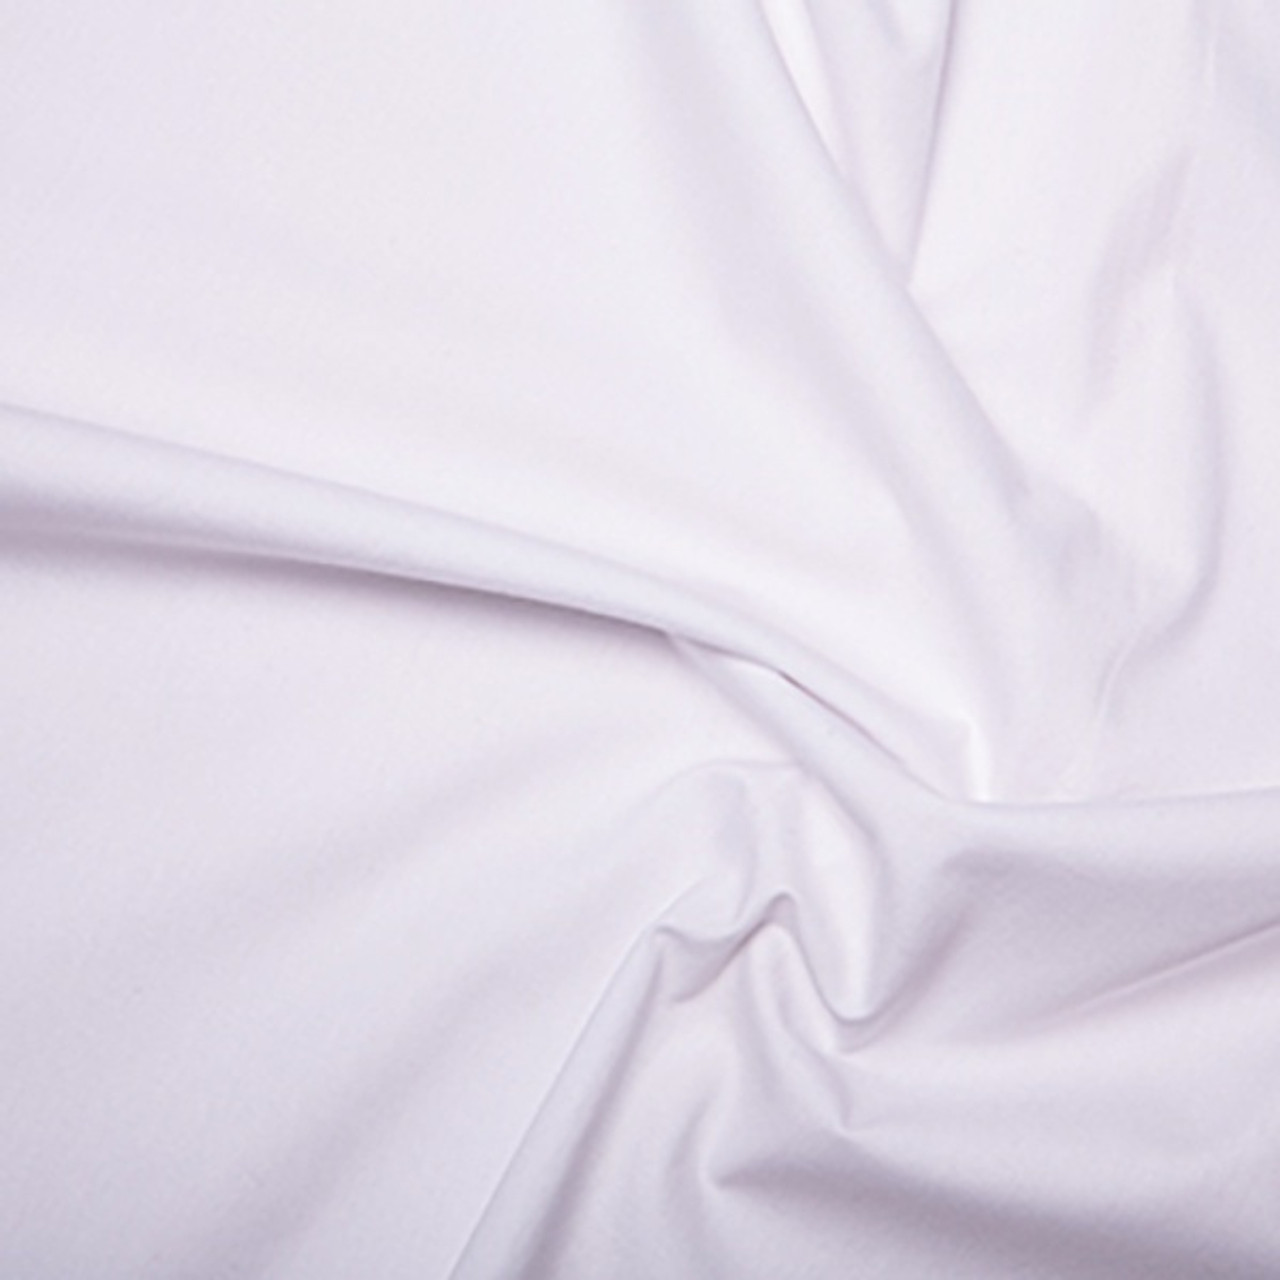 White Plain 100% Cotton Poplin Fabric, 112cm/44in wide, Sold Per HALF Metre